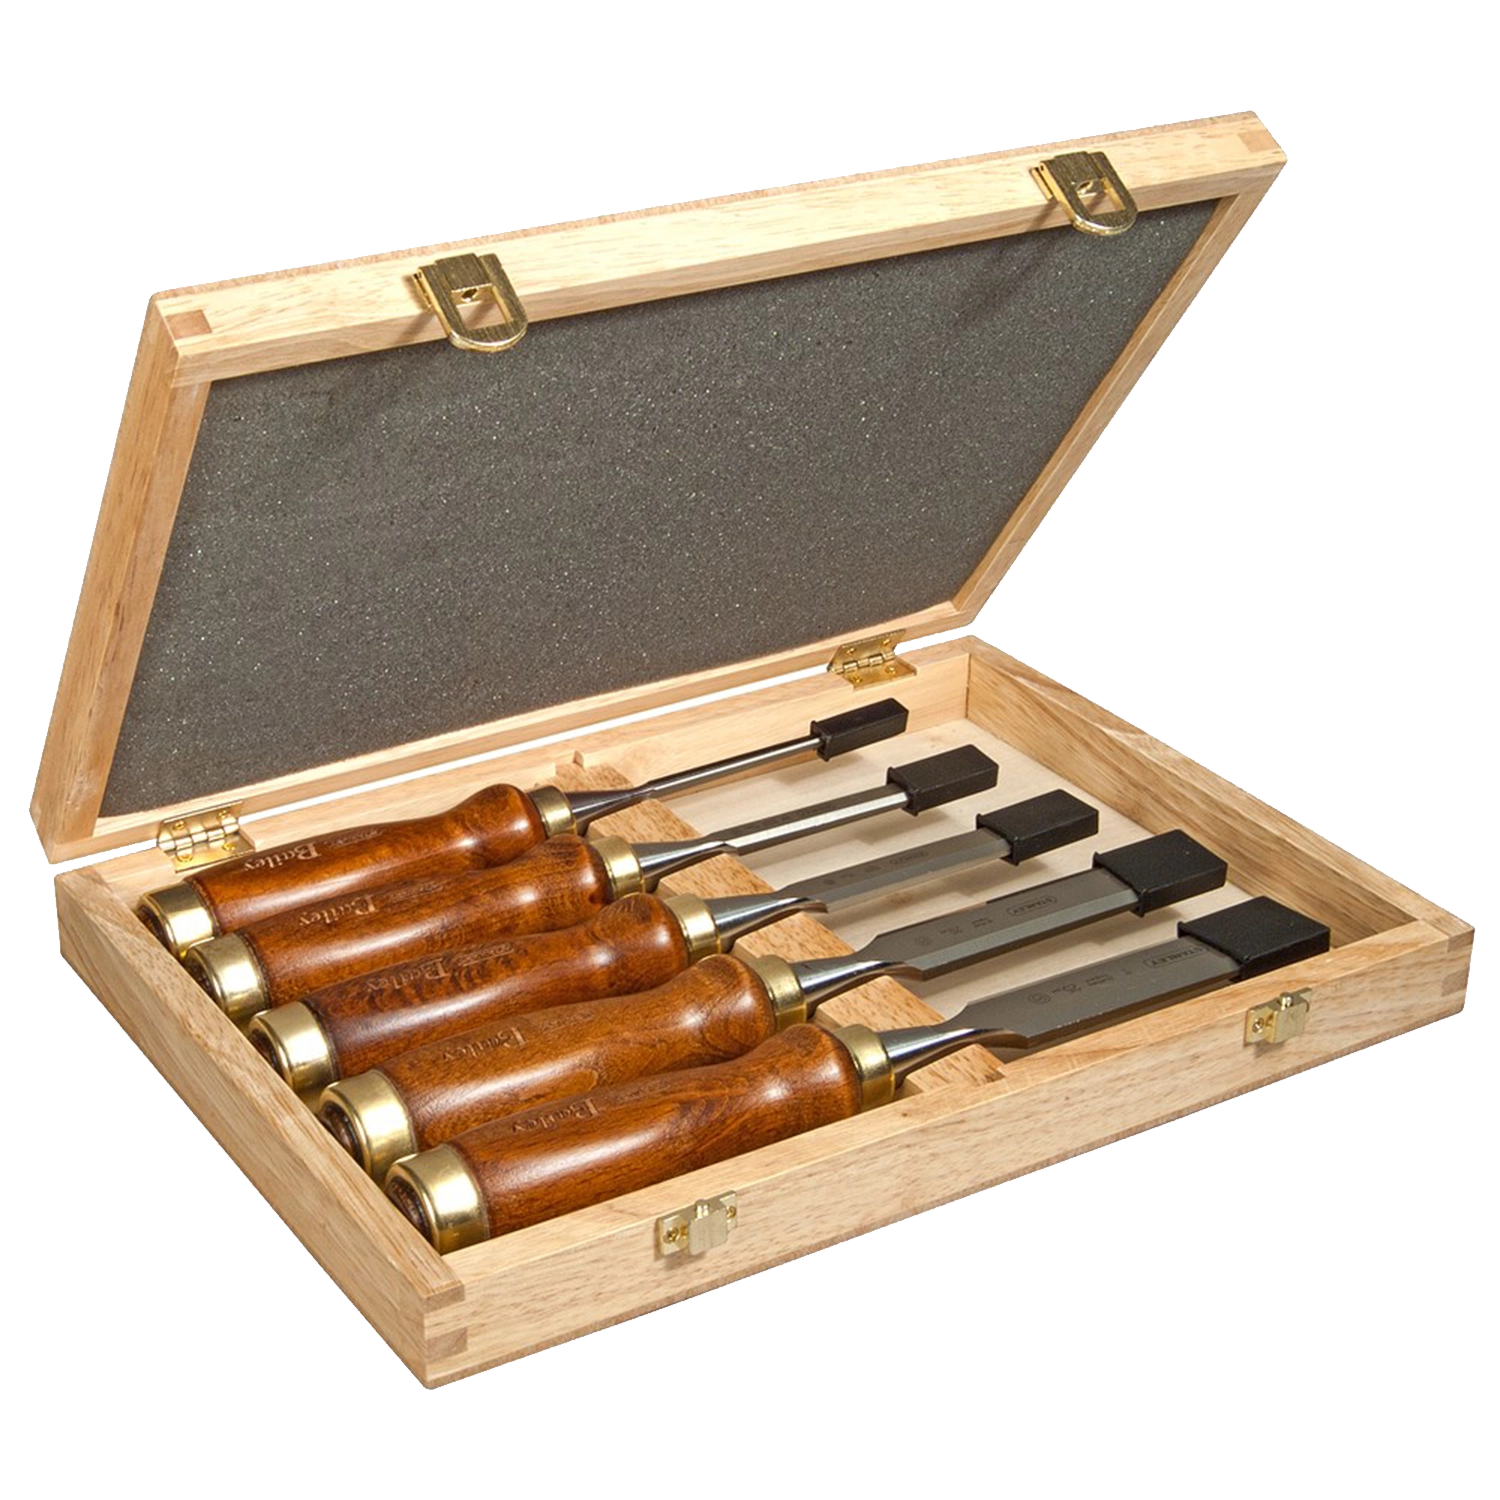 RIDGID set (5st) steekbeitels met houten hecht (6-10-15-20-25) 2-16-217: Set van 5 steekbeitels met houten handgrepen in verschillende maten (6 mm, 10 mm, 15 mm, 20 mm, 25 mm).